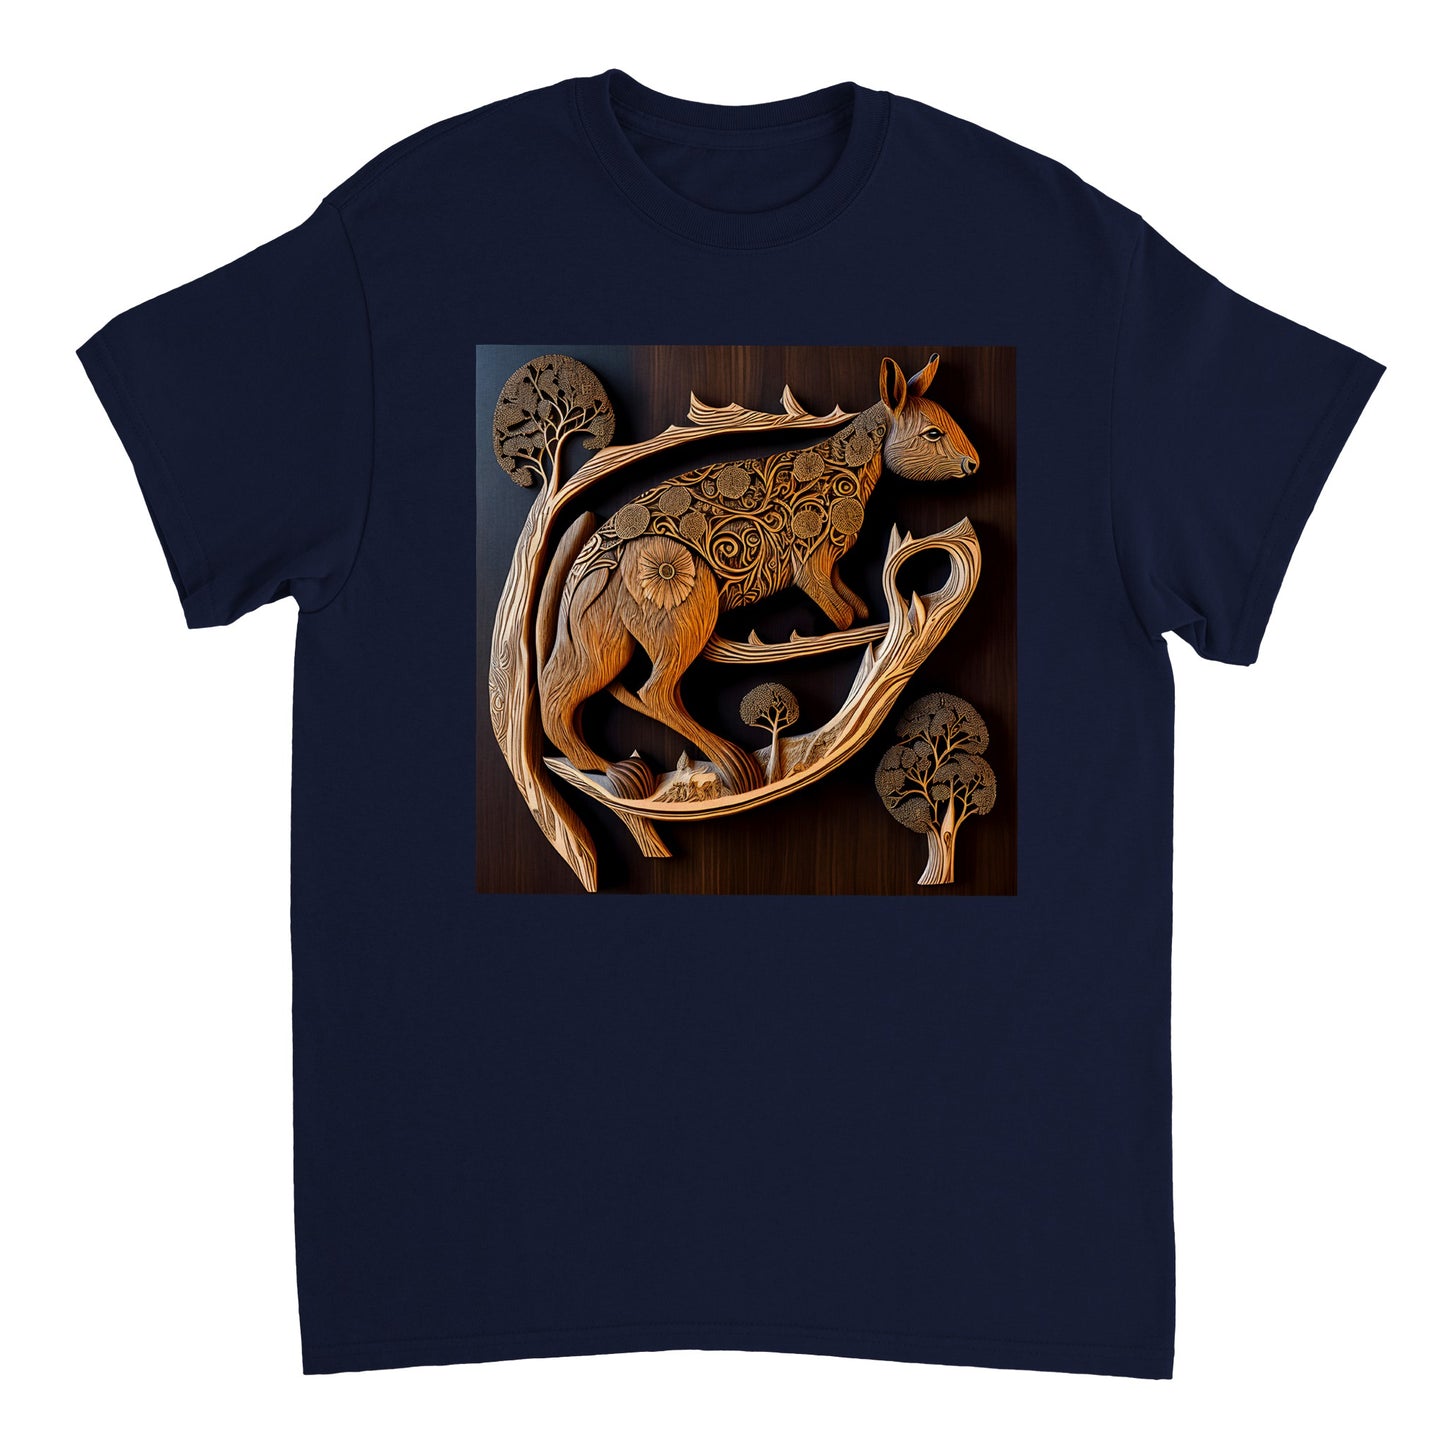 3D Wooden Animal Art - Heavyweight Unisex Crewneck T-shirt 68